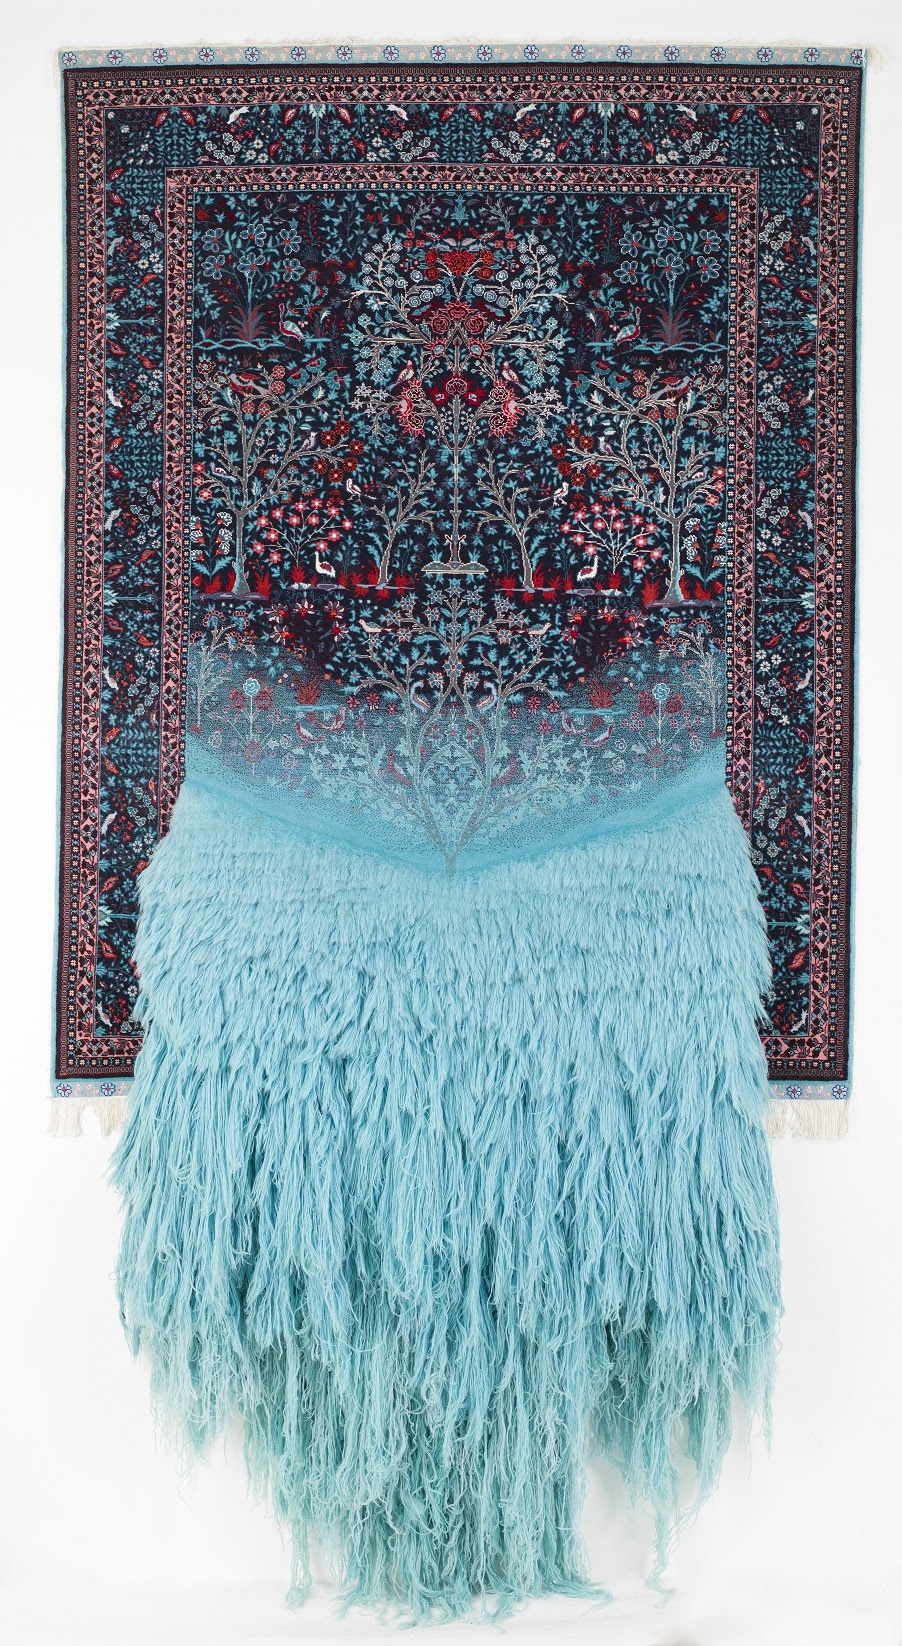 Surreal Carpet by Faig Ahmed